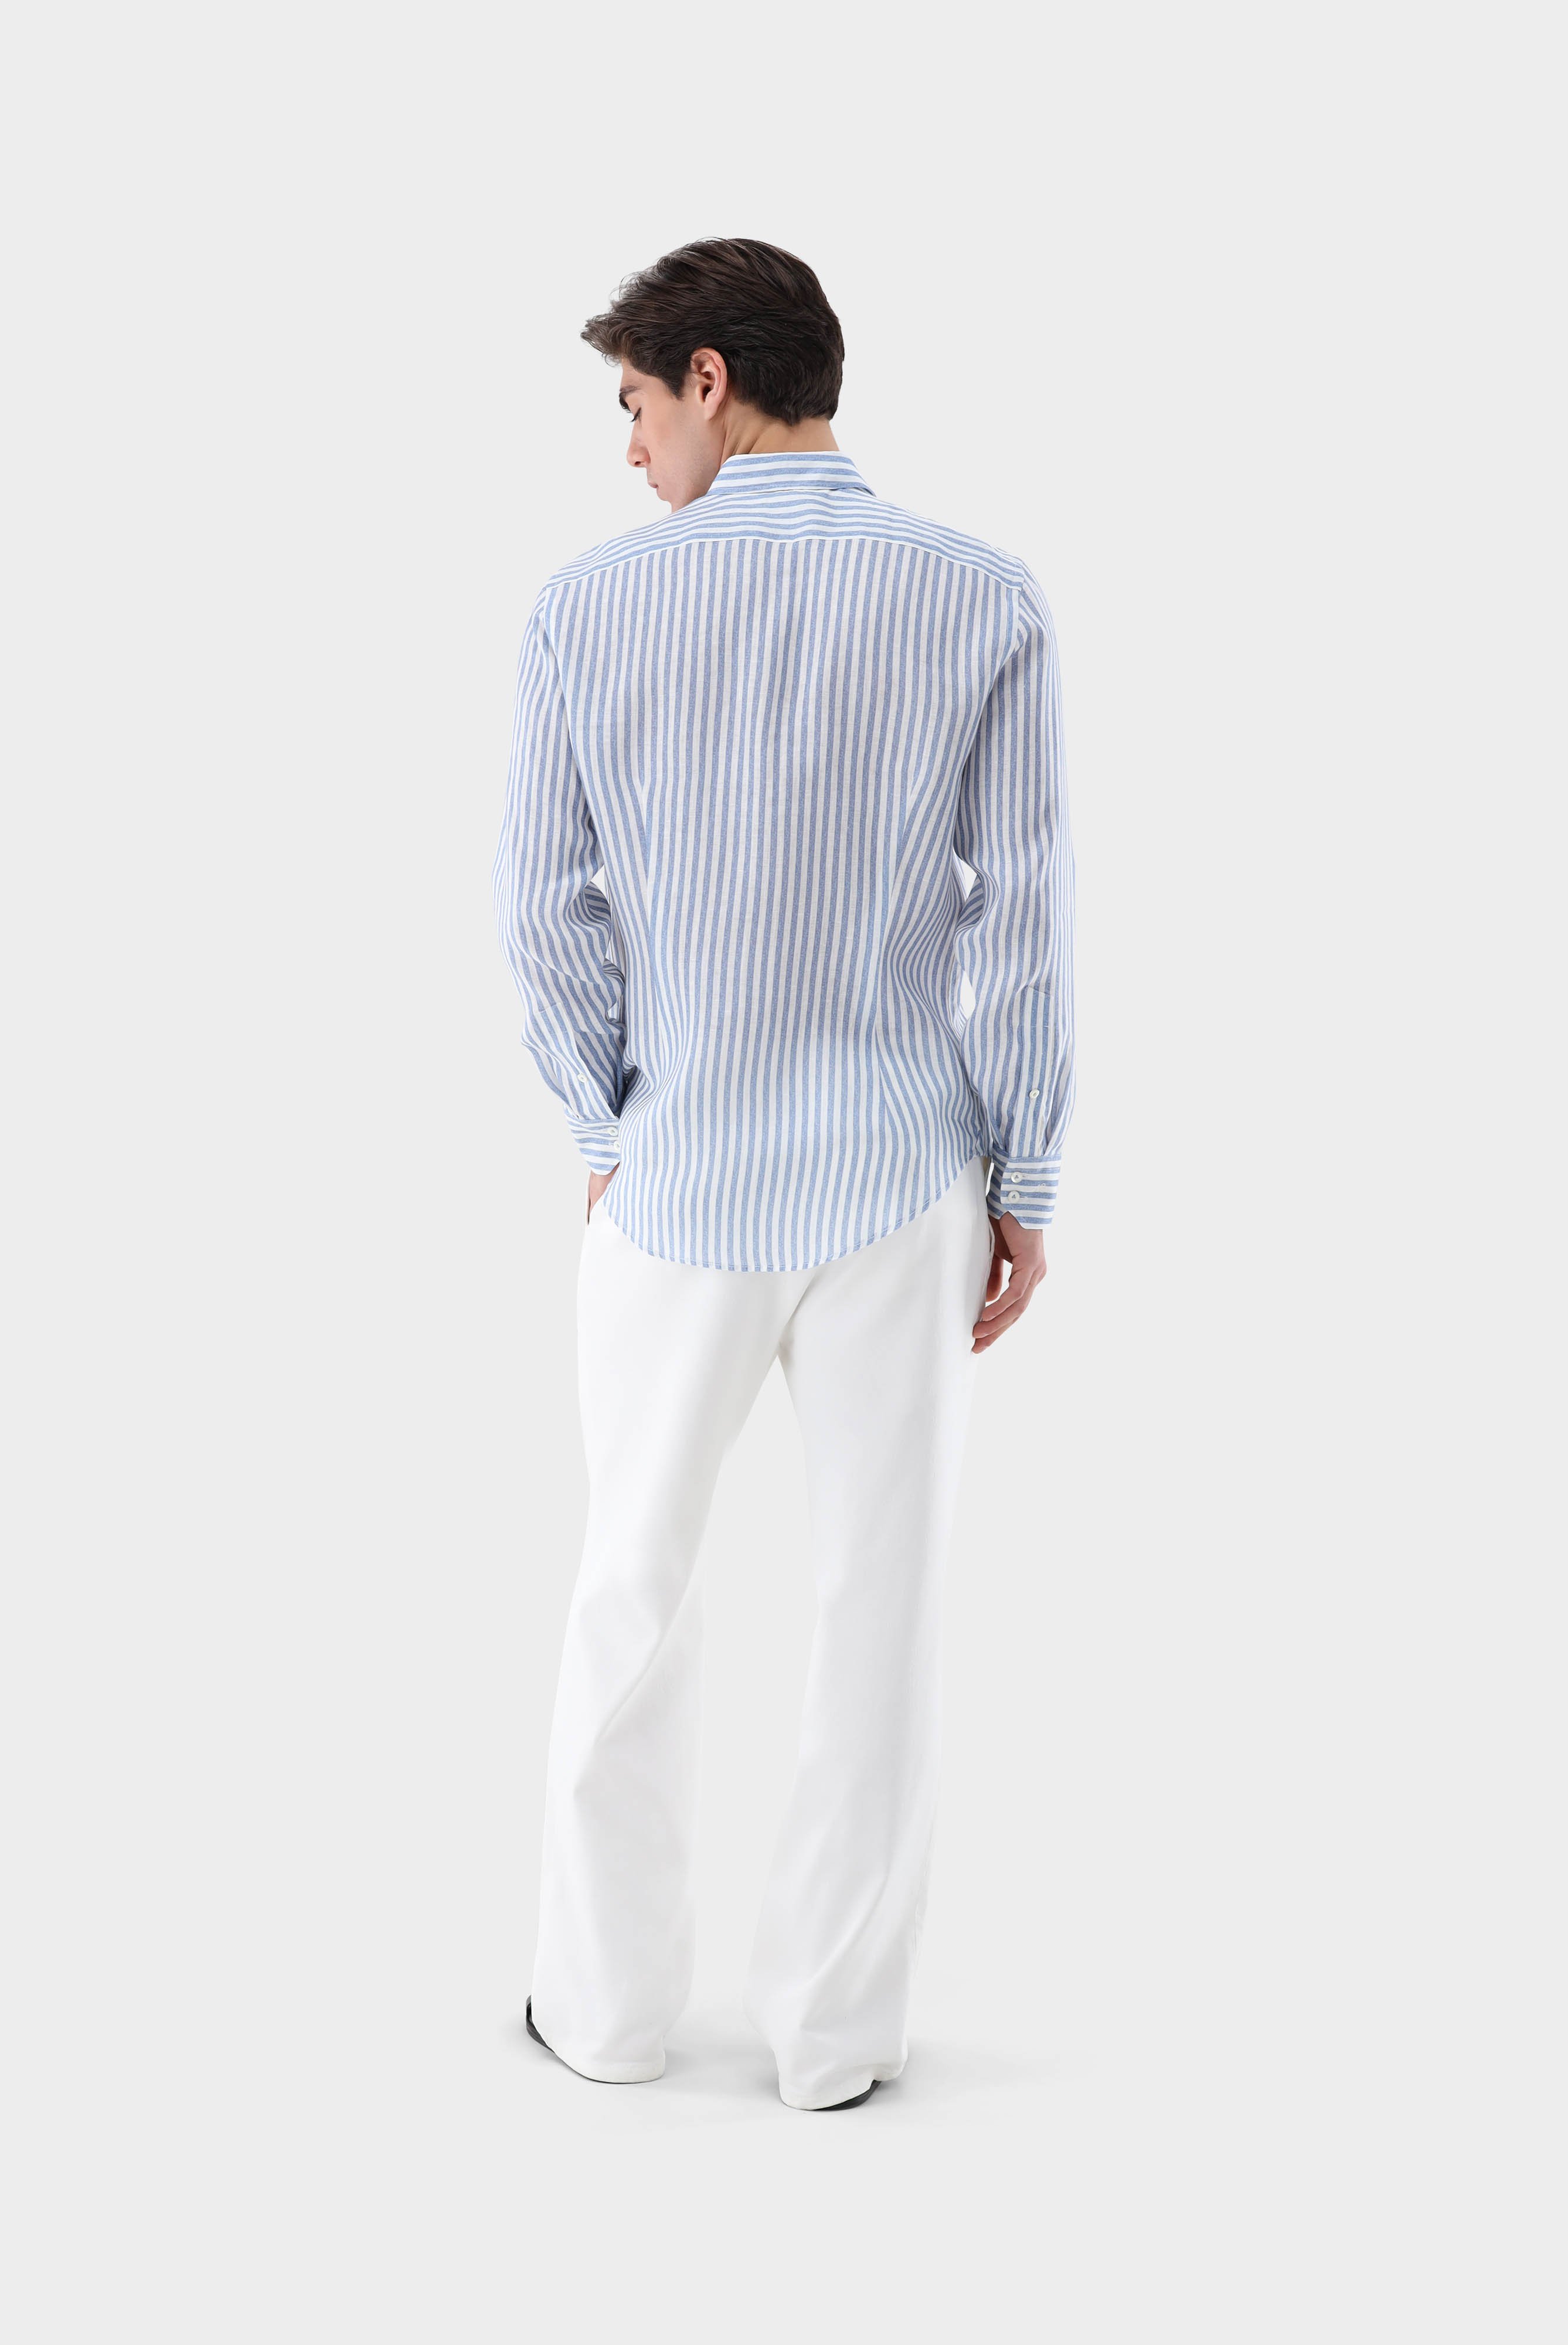 Casual Hemden+Leinenhemd mit Streifen-Druck Tailor Fit+20.2013.9V.170352.740.42